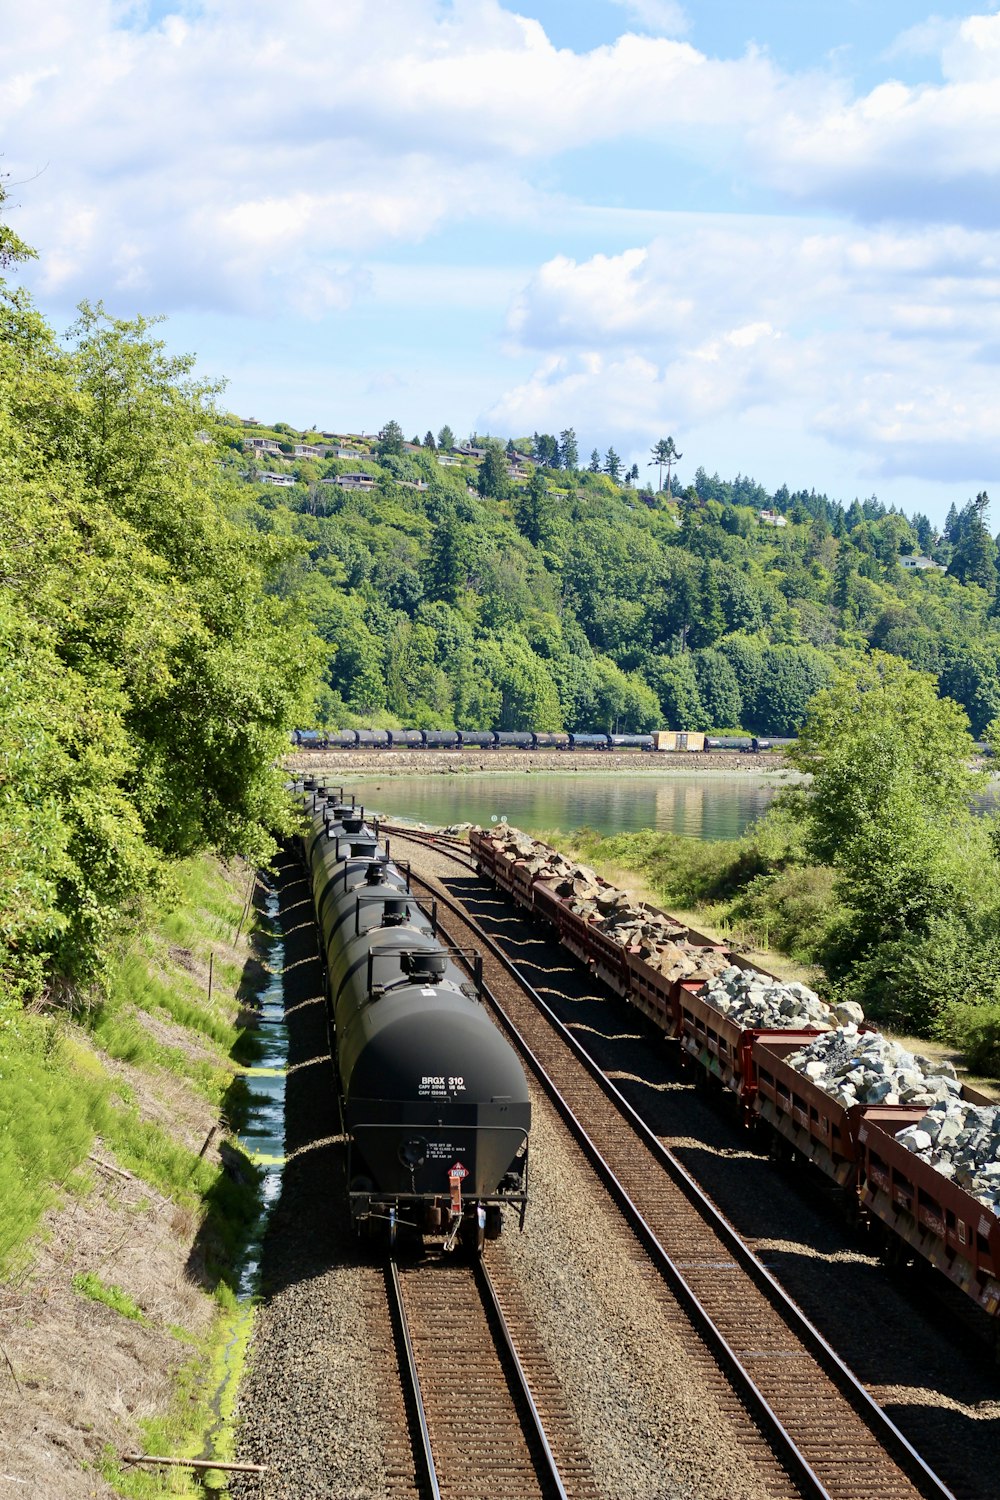 Schwarzer Zug auf der Schiene in der Nähe von grünen Bäumen tagsüber